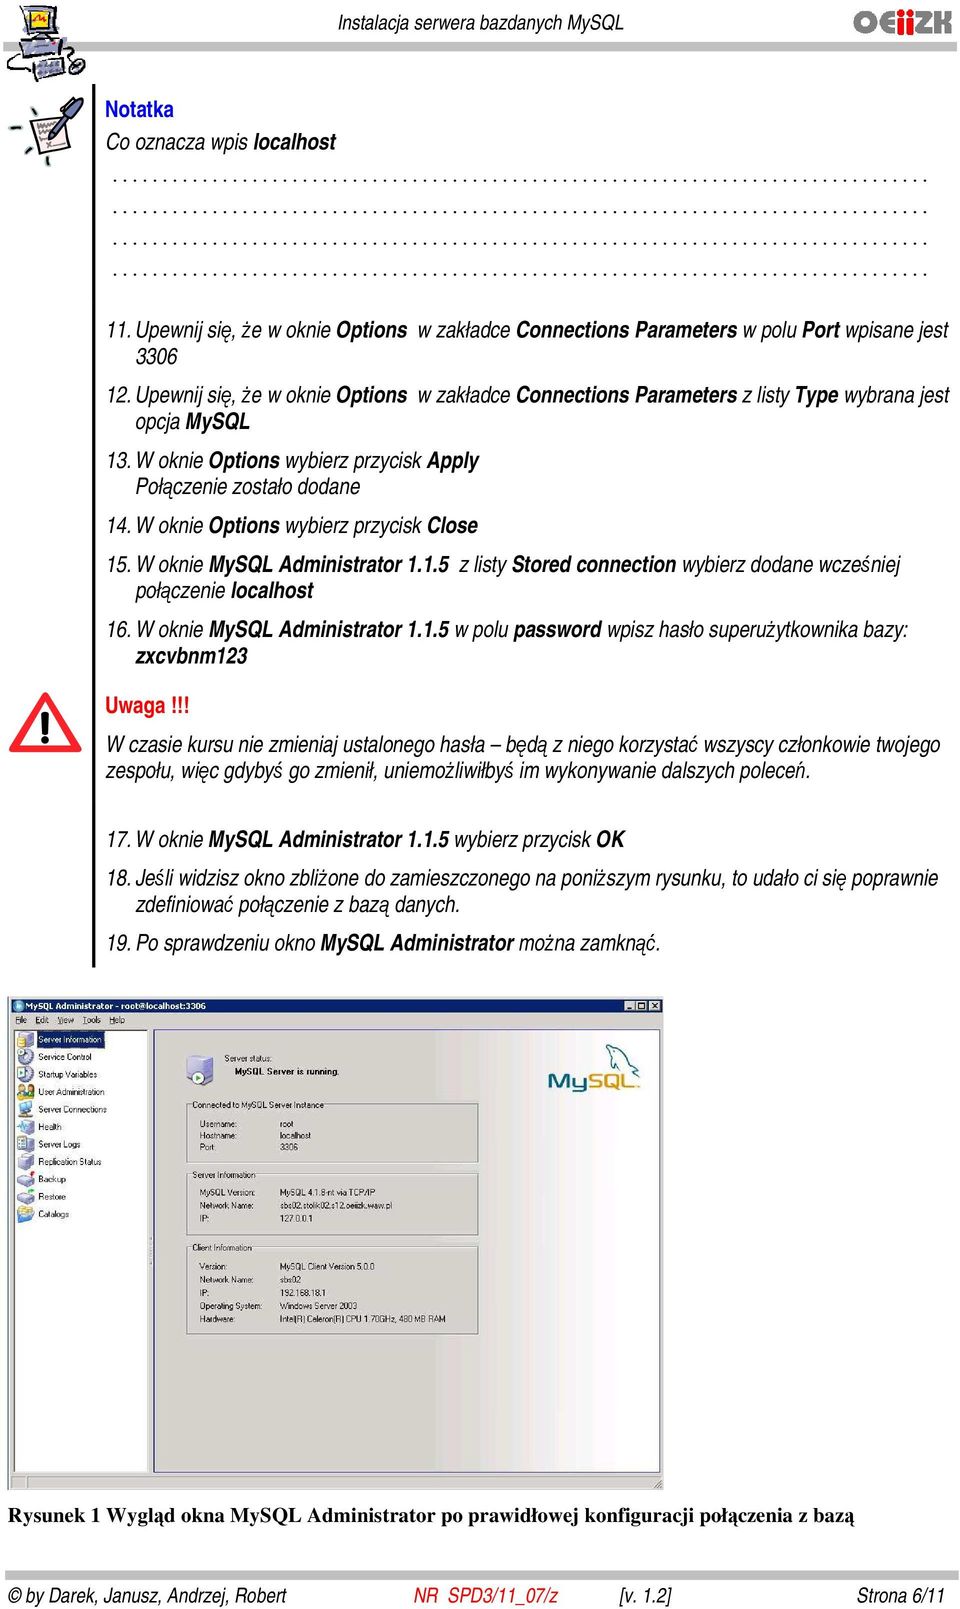 W oknie Options wybierz przycisk Close 15. W oknie MySQL Administrator 1.1.5 z listy Stored connection wybierz dodane wcześniej połączenie localhost 16. W oknie MySQL Administrator 1.1.5 w polu password wpisz hasło superużytkownika bazy: zxcvbnm123 Uwaga!